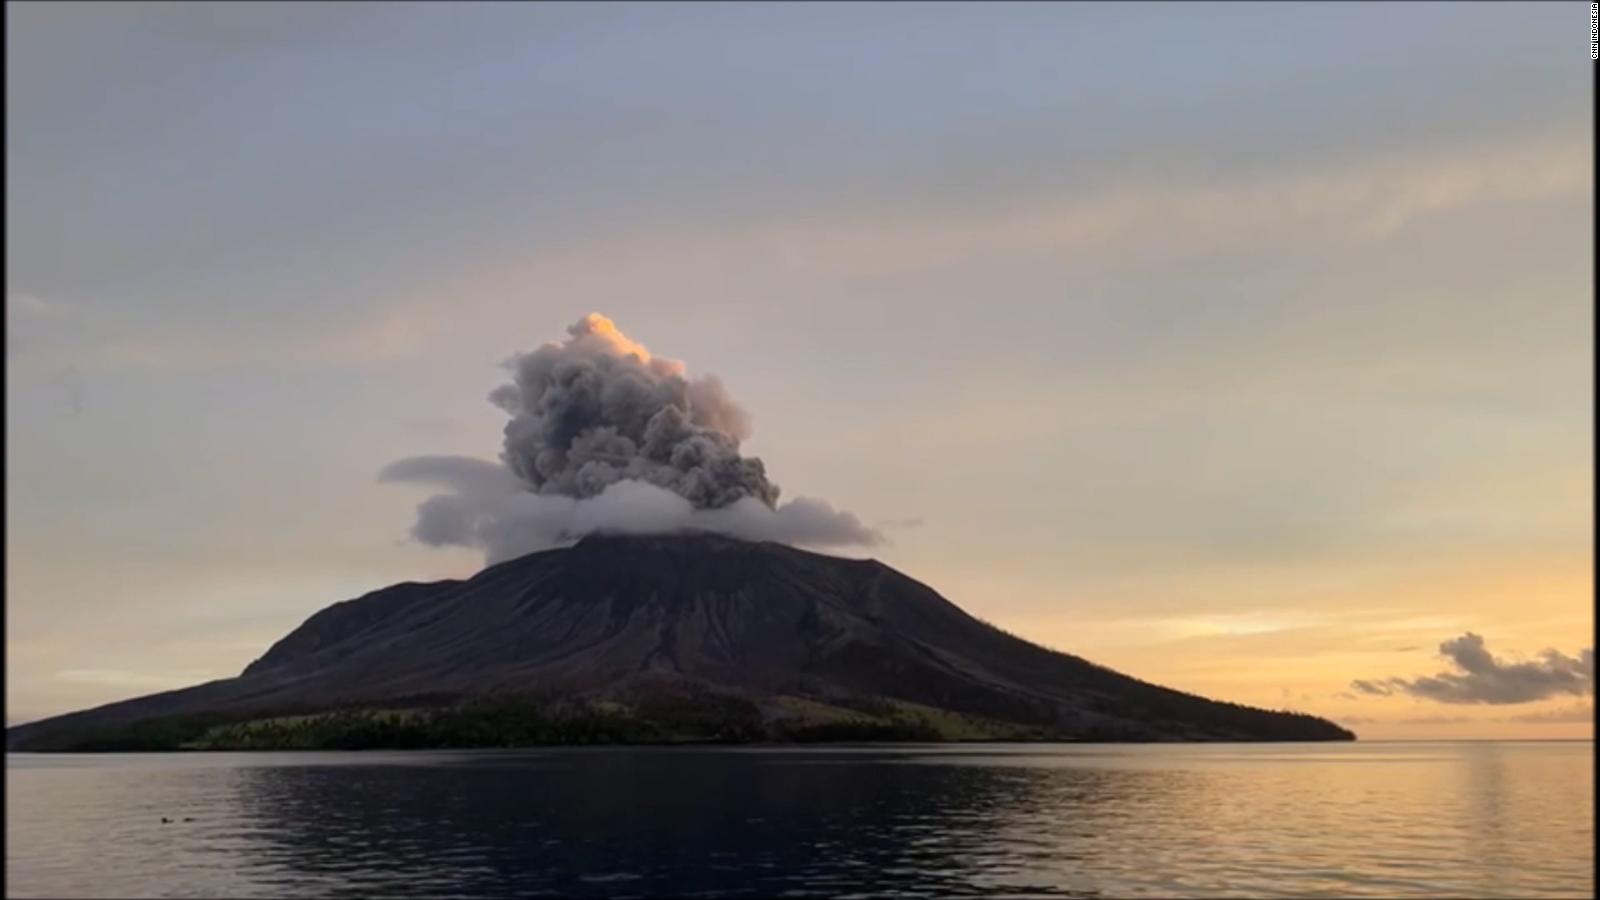 Así se ve la enorme erupción del volcán Ruang, que despierta
temores de un tsunami en Indonesia